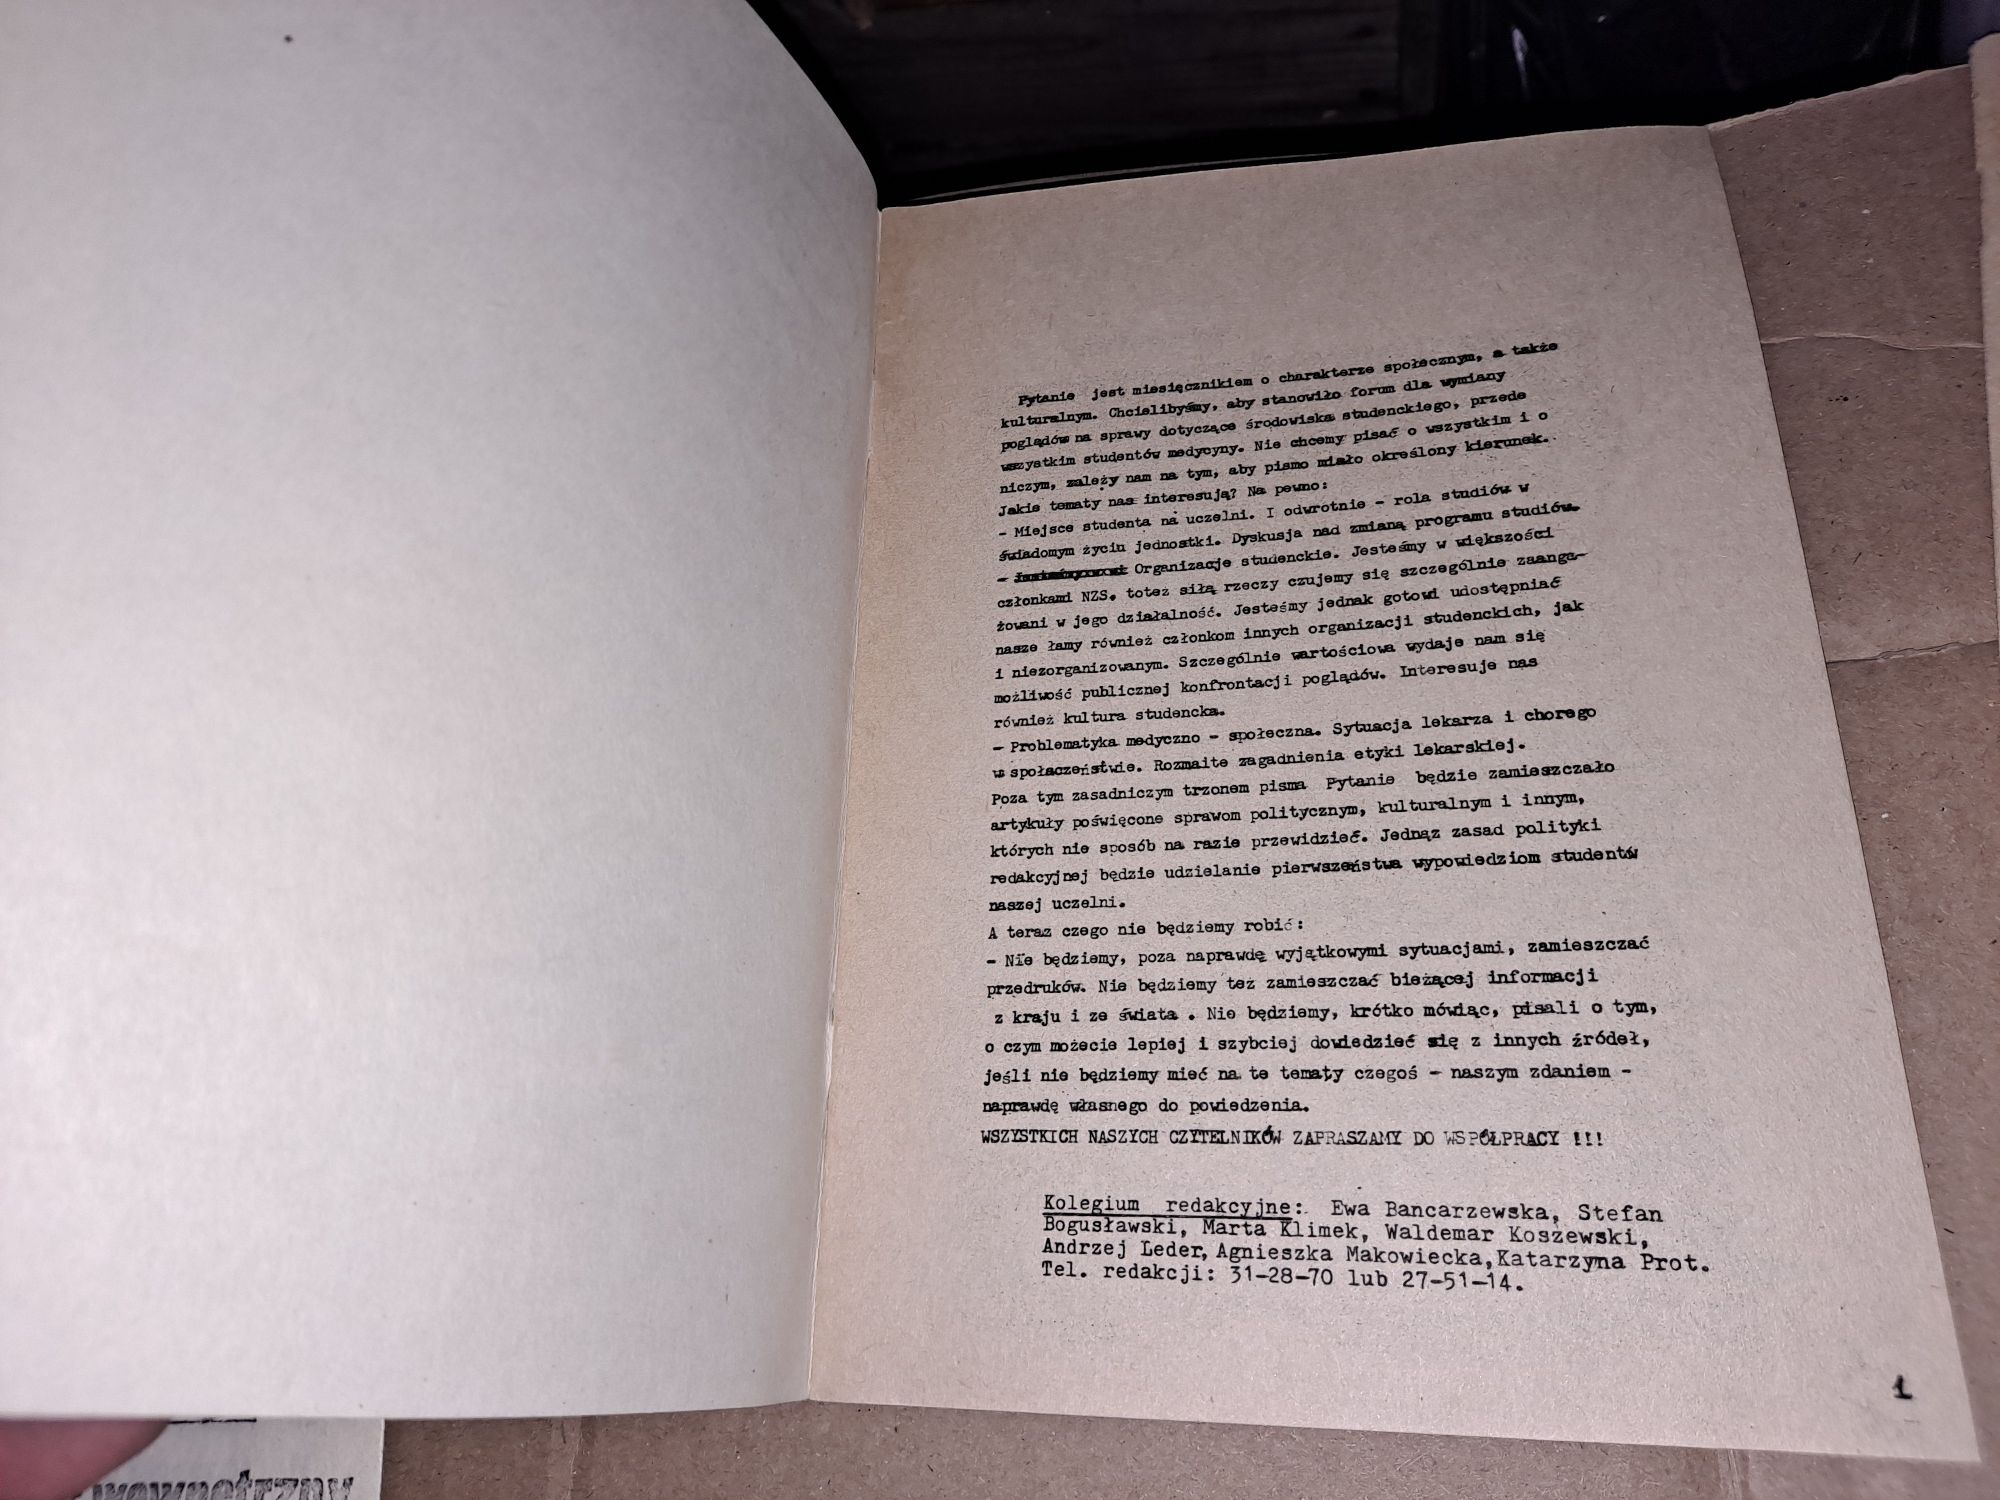 Gazeta Studentów medycyny 1981. 2 "PYTANIE"